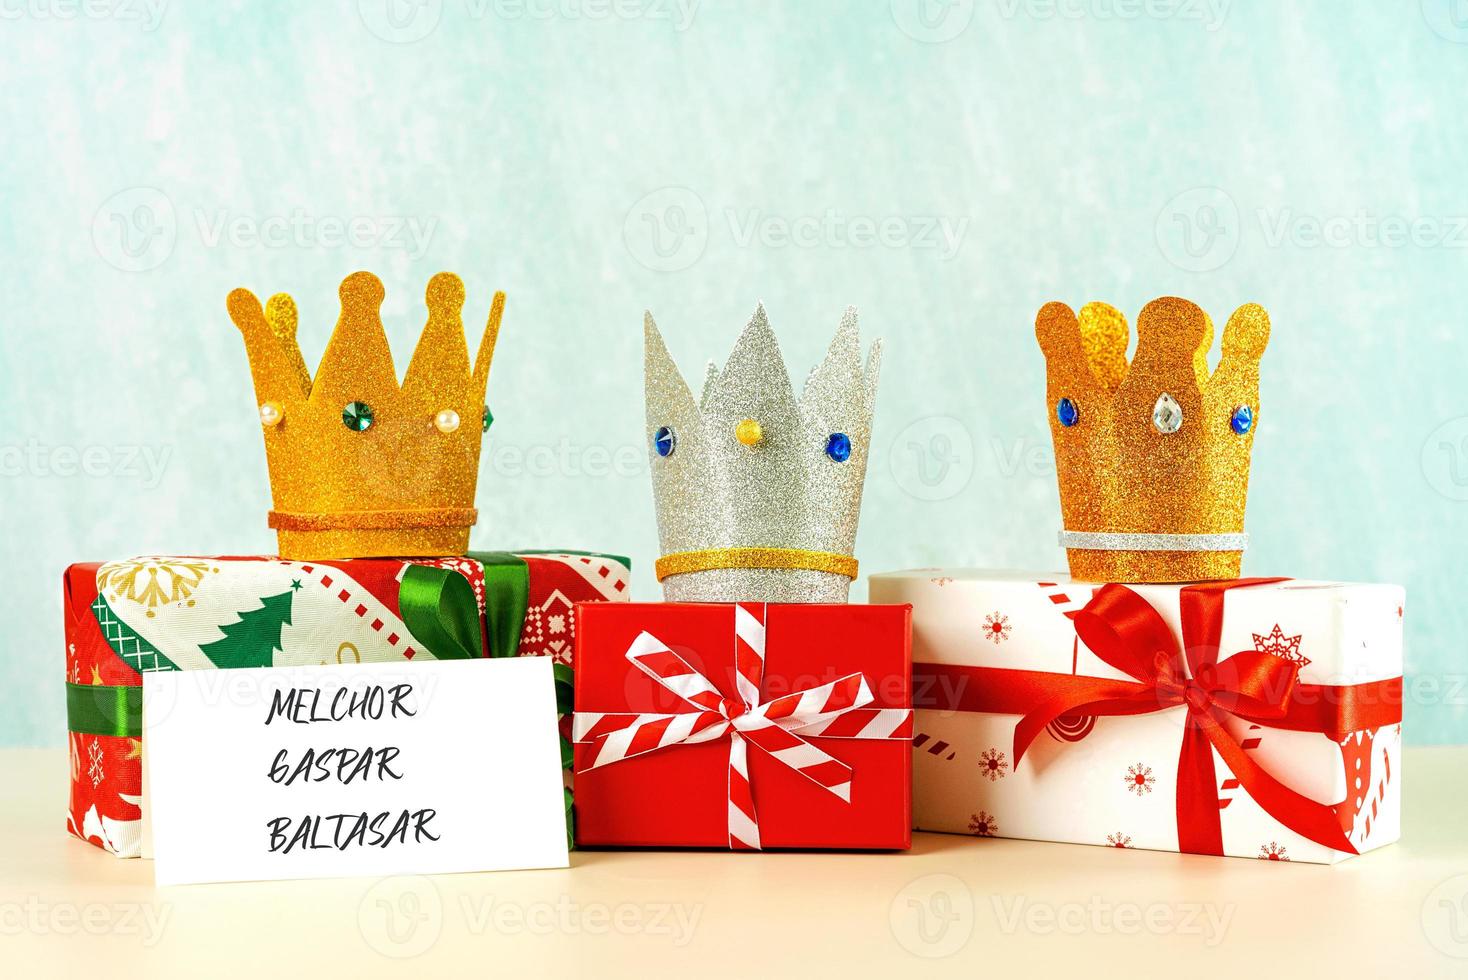 tres coronas de los tres reyes magos con cajas de regalo de navidad. concepto para el día de dia de reyes magos. Los Tres Reyes Magos foto